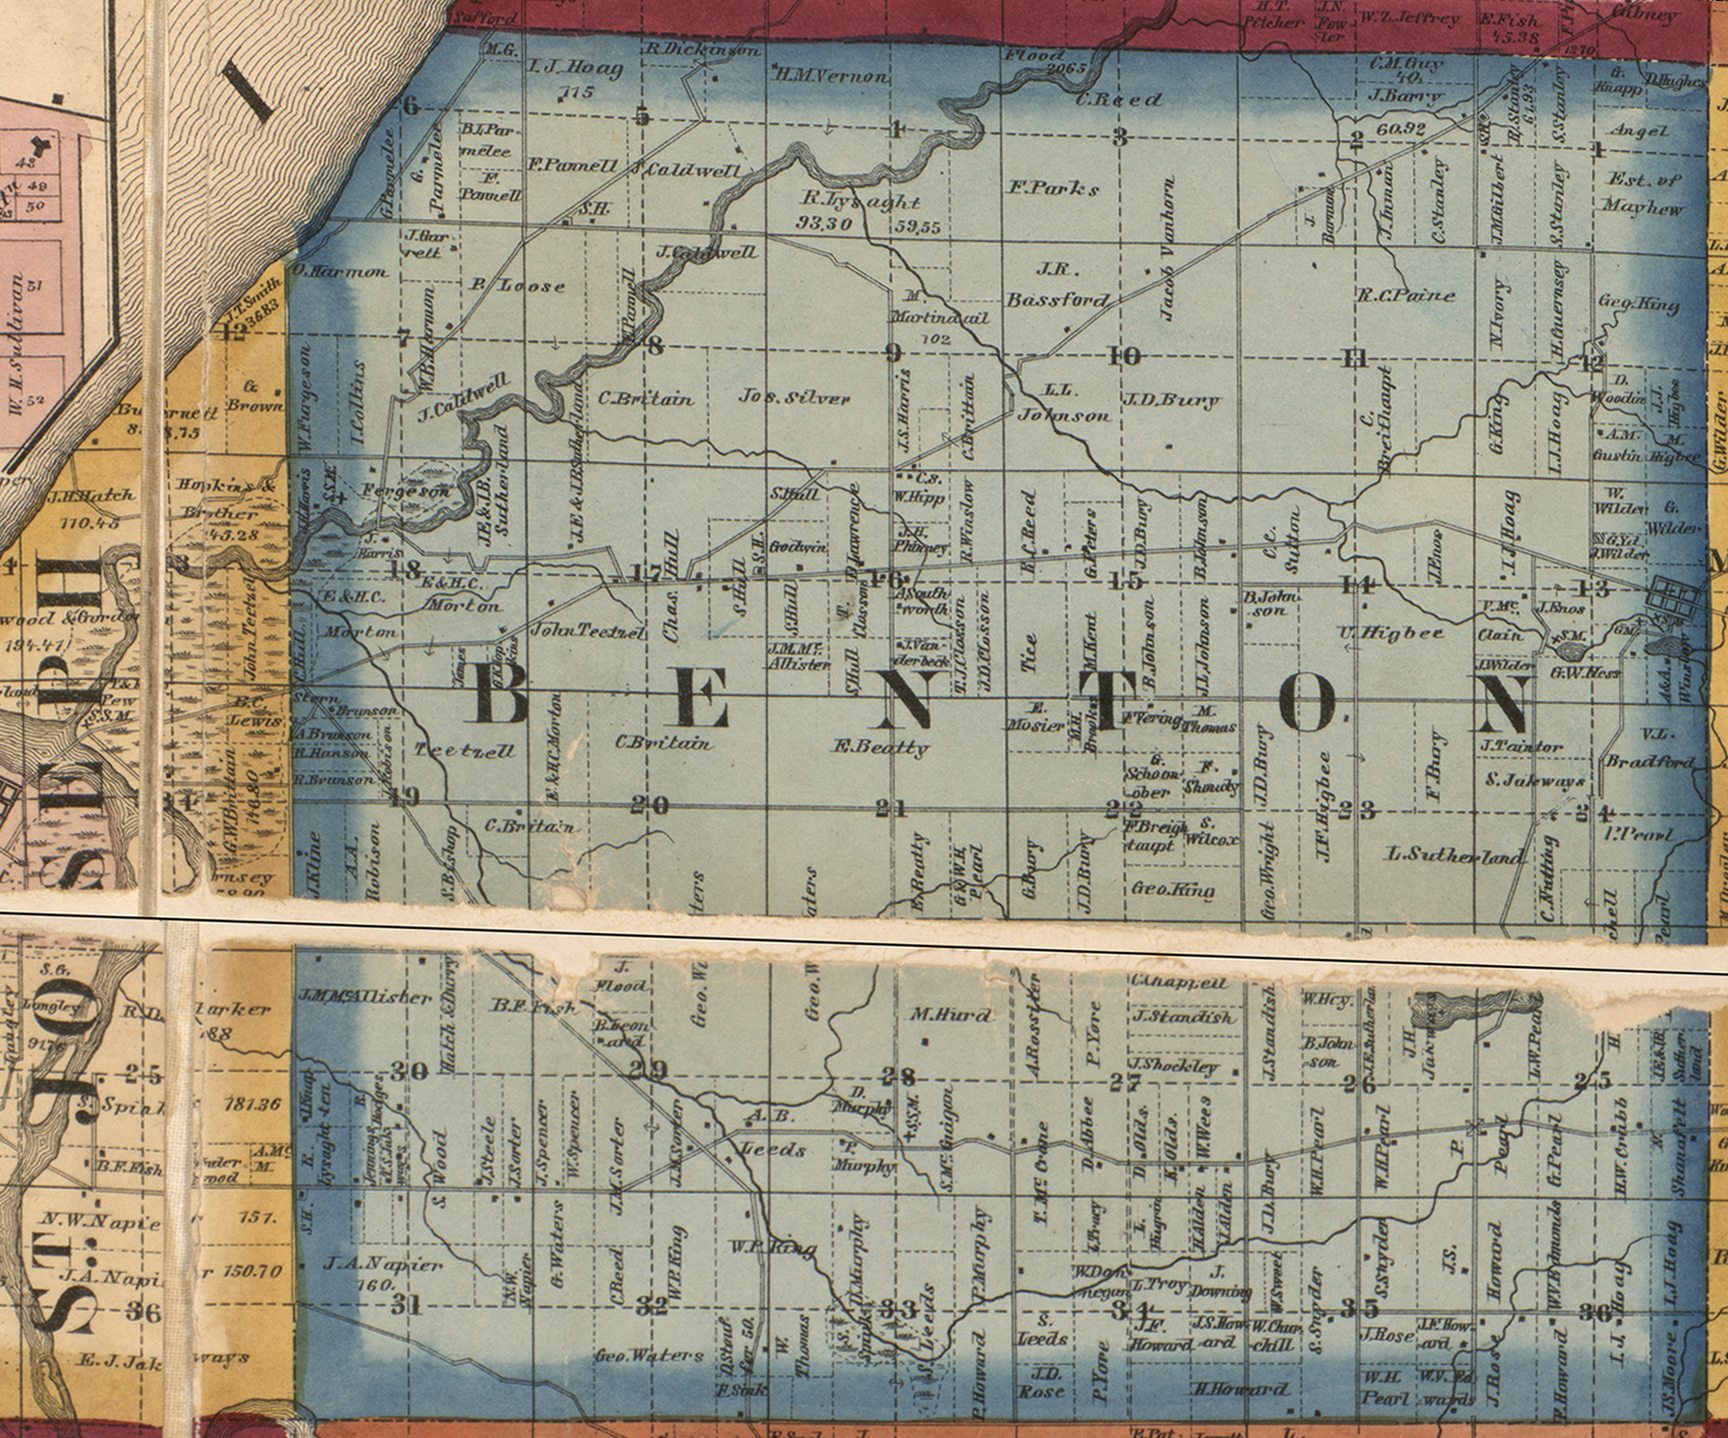 1860 Benton Township, Michigan landownership map